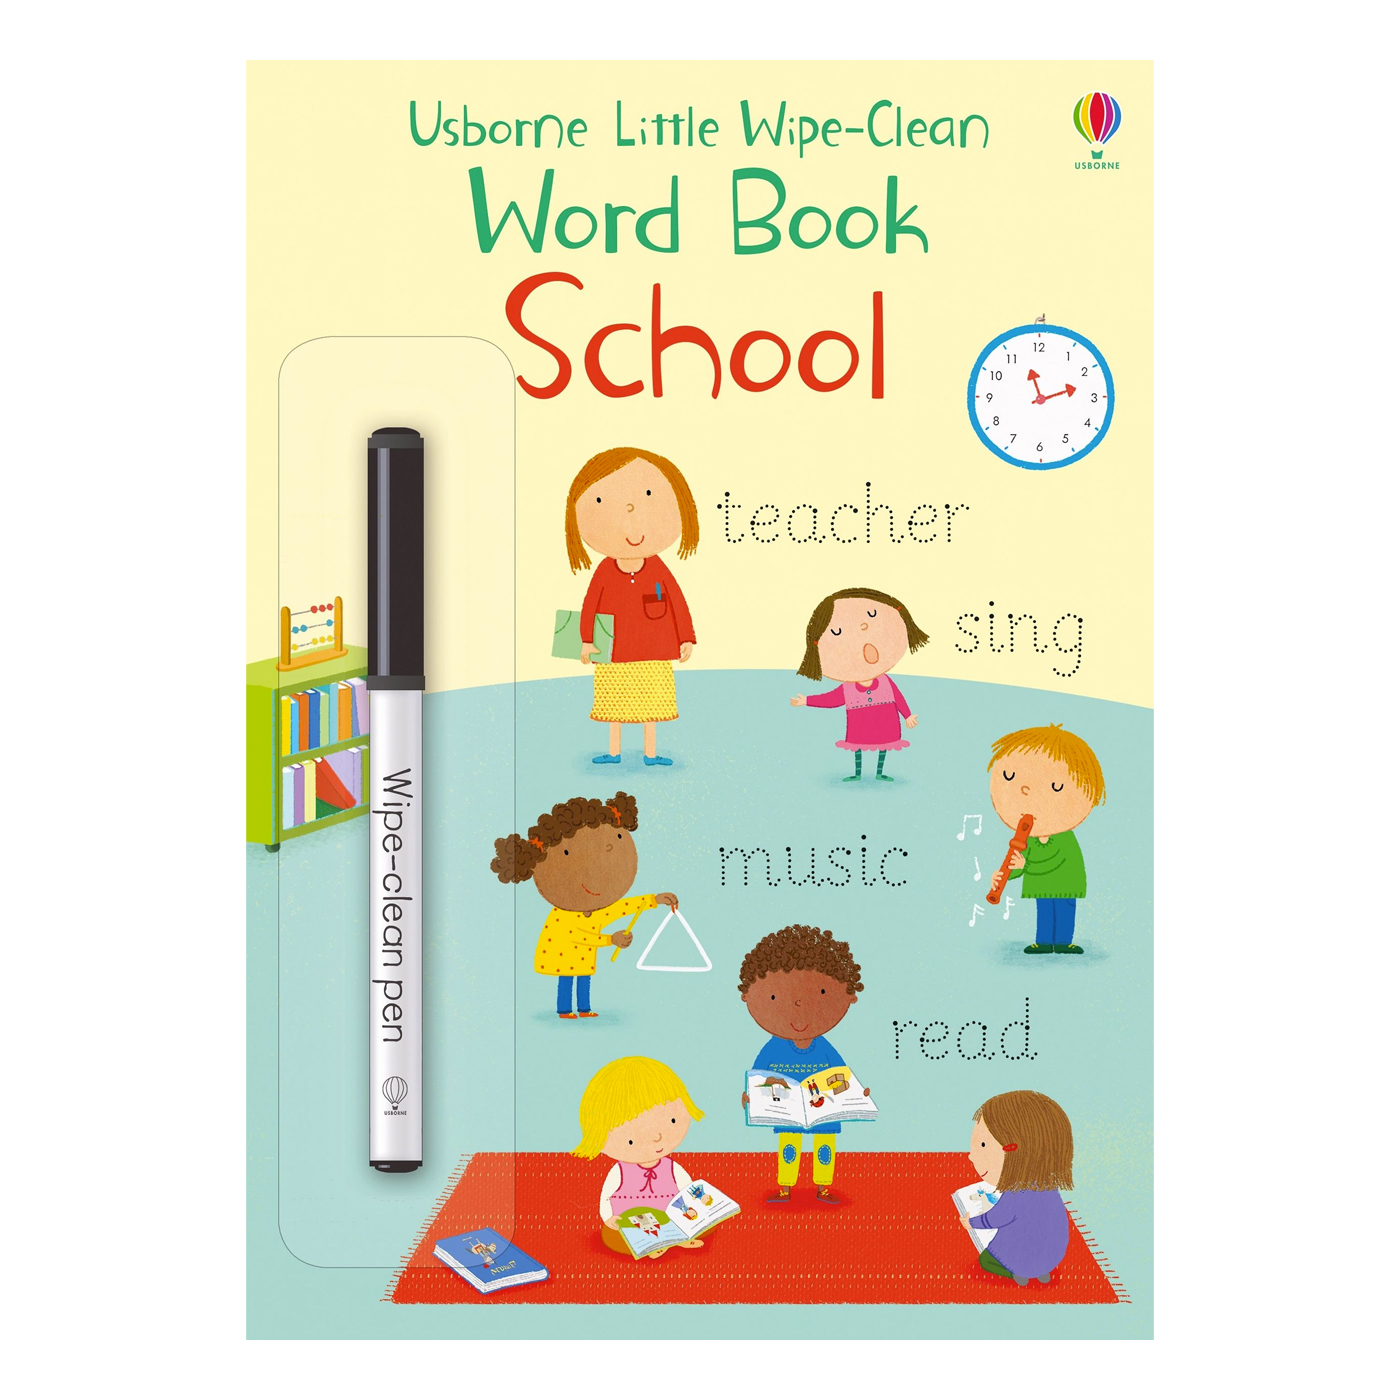  Little Wipe-Clean Word Book School